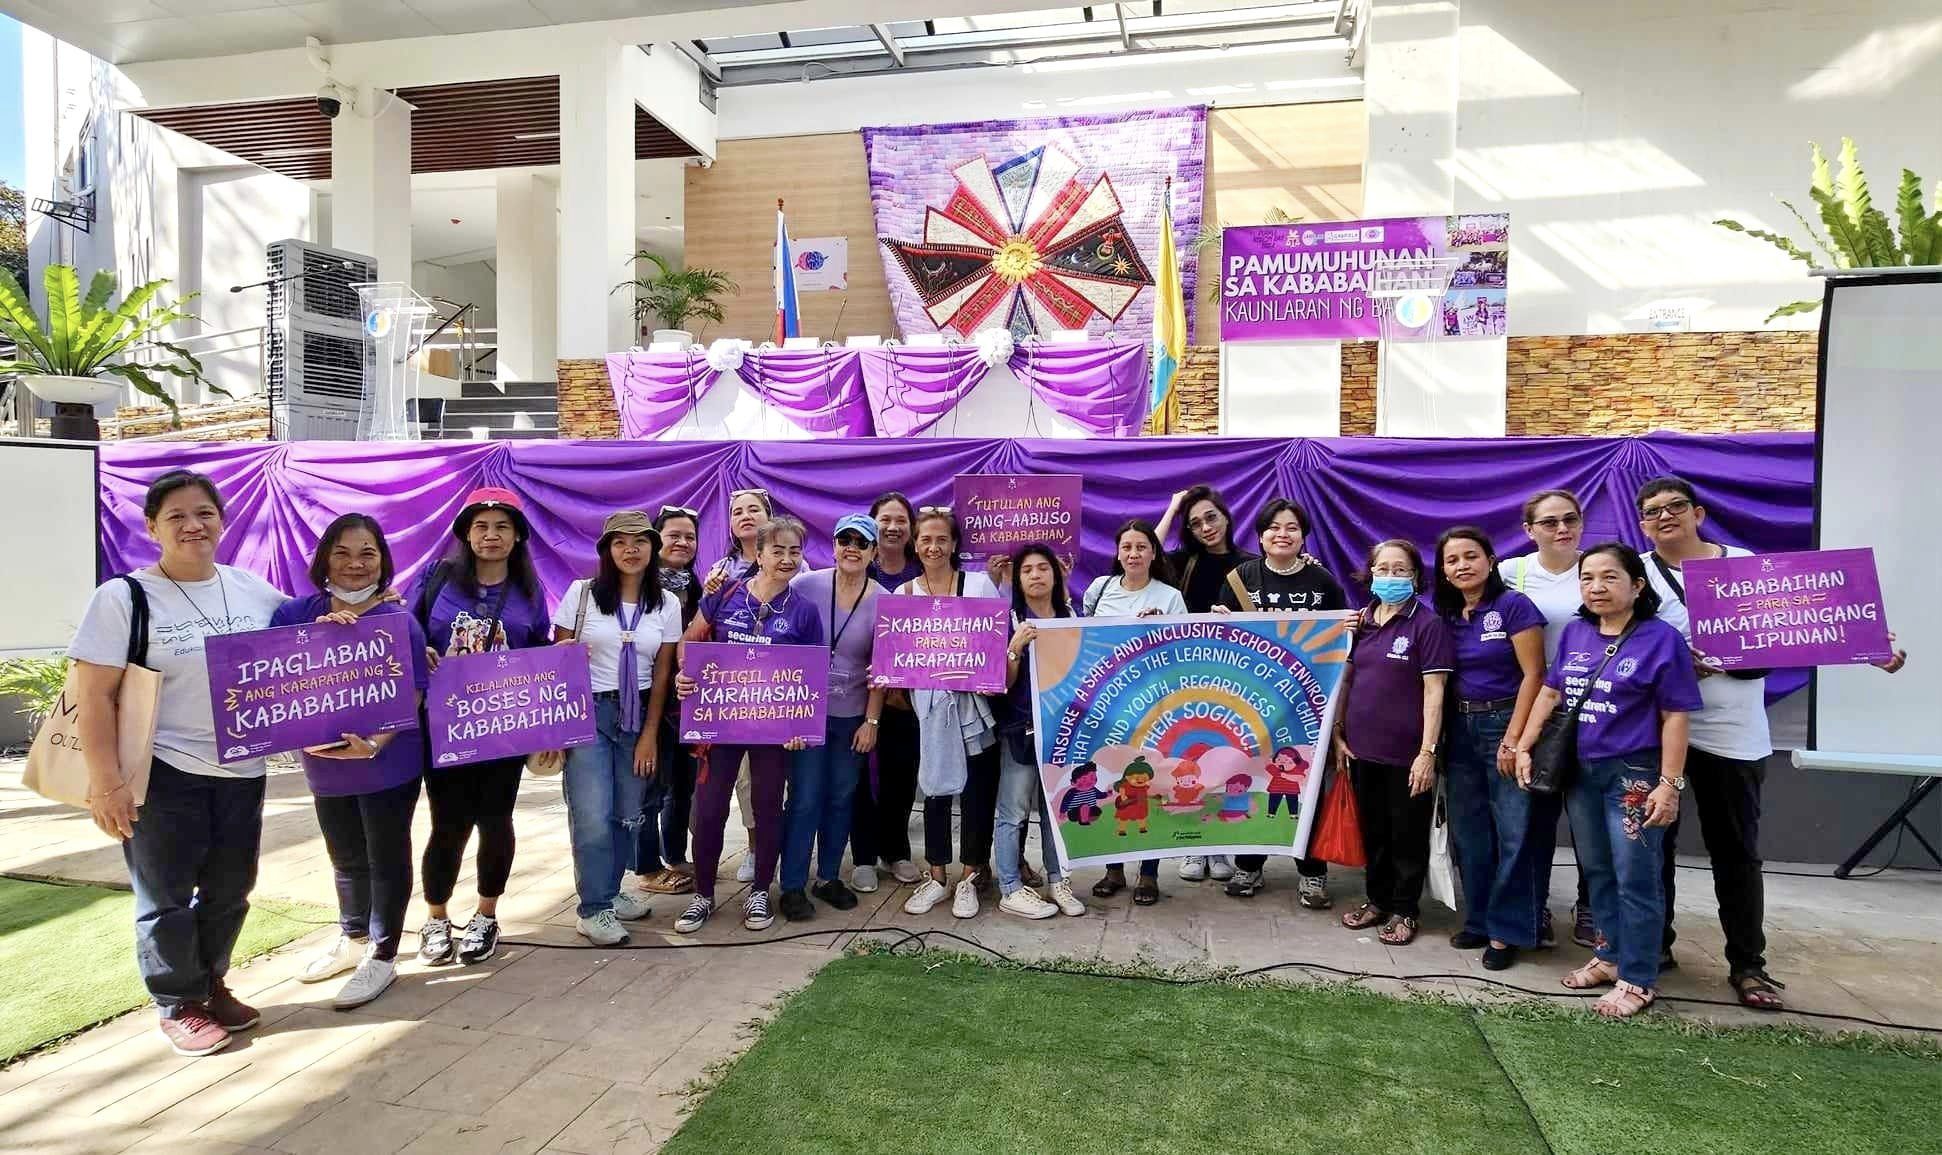 Read more about the article Kaisa ang E-Net Philippines sa pagdiriwang ng Purple Action Day sa Buwan ng mga Kababaihan na may temang “Pamumuhunan sa Kababaihan:Kaularan ng Bayan”.